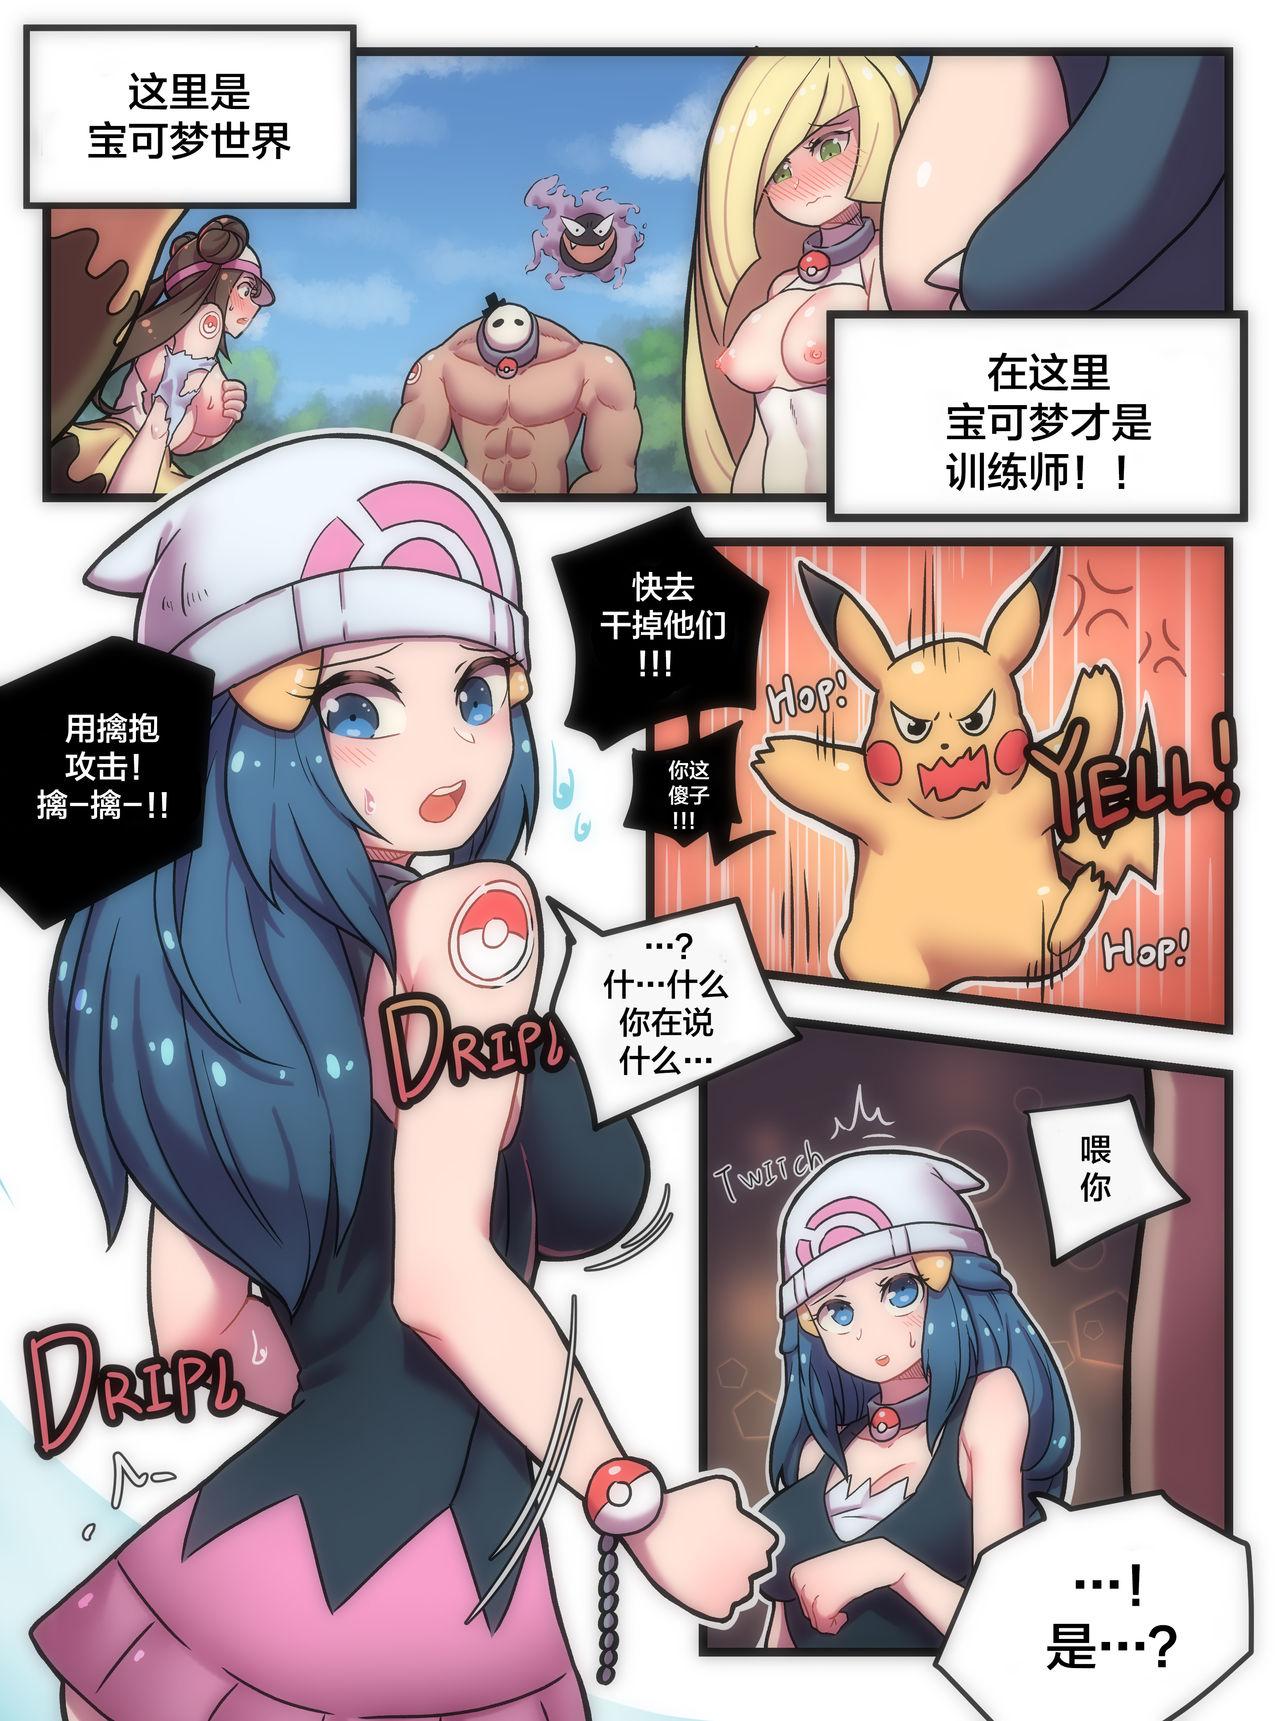 Hot Girl Fucking Pokemon World! - Pokemon | pocket monsters Hiddencam - Page 2